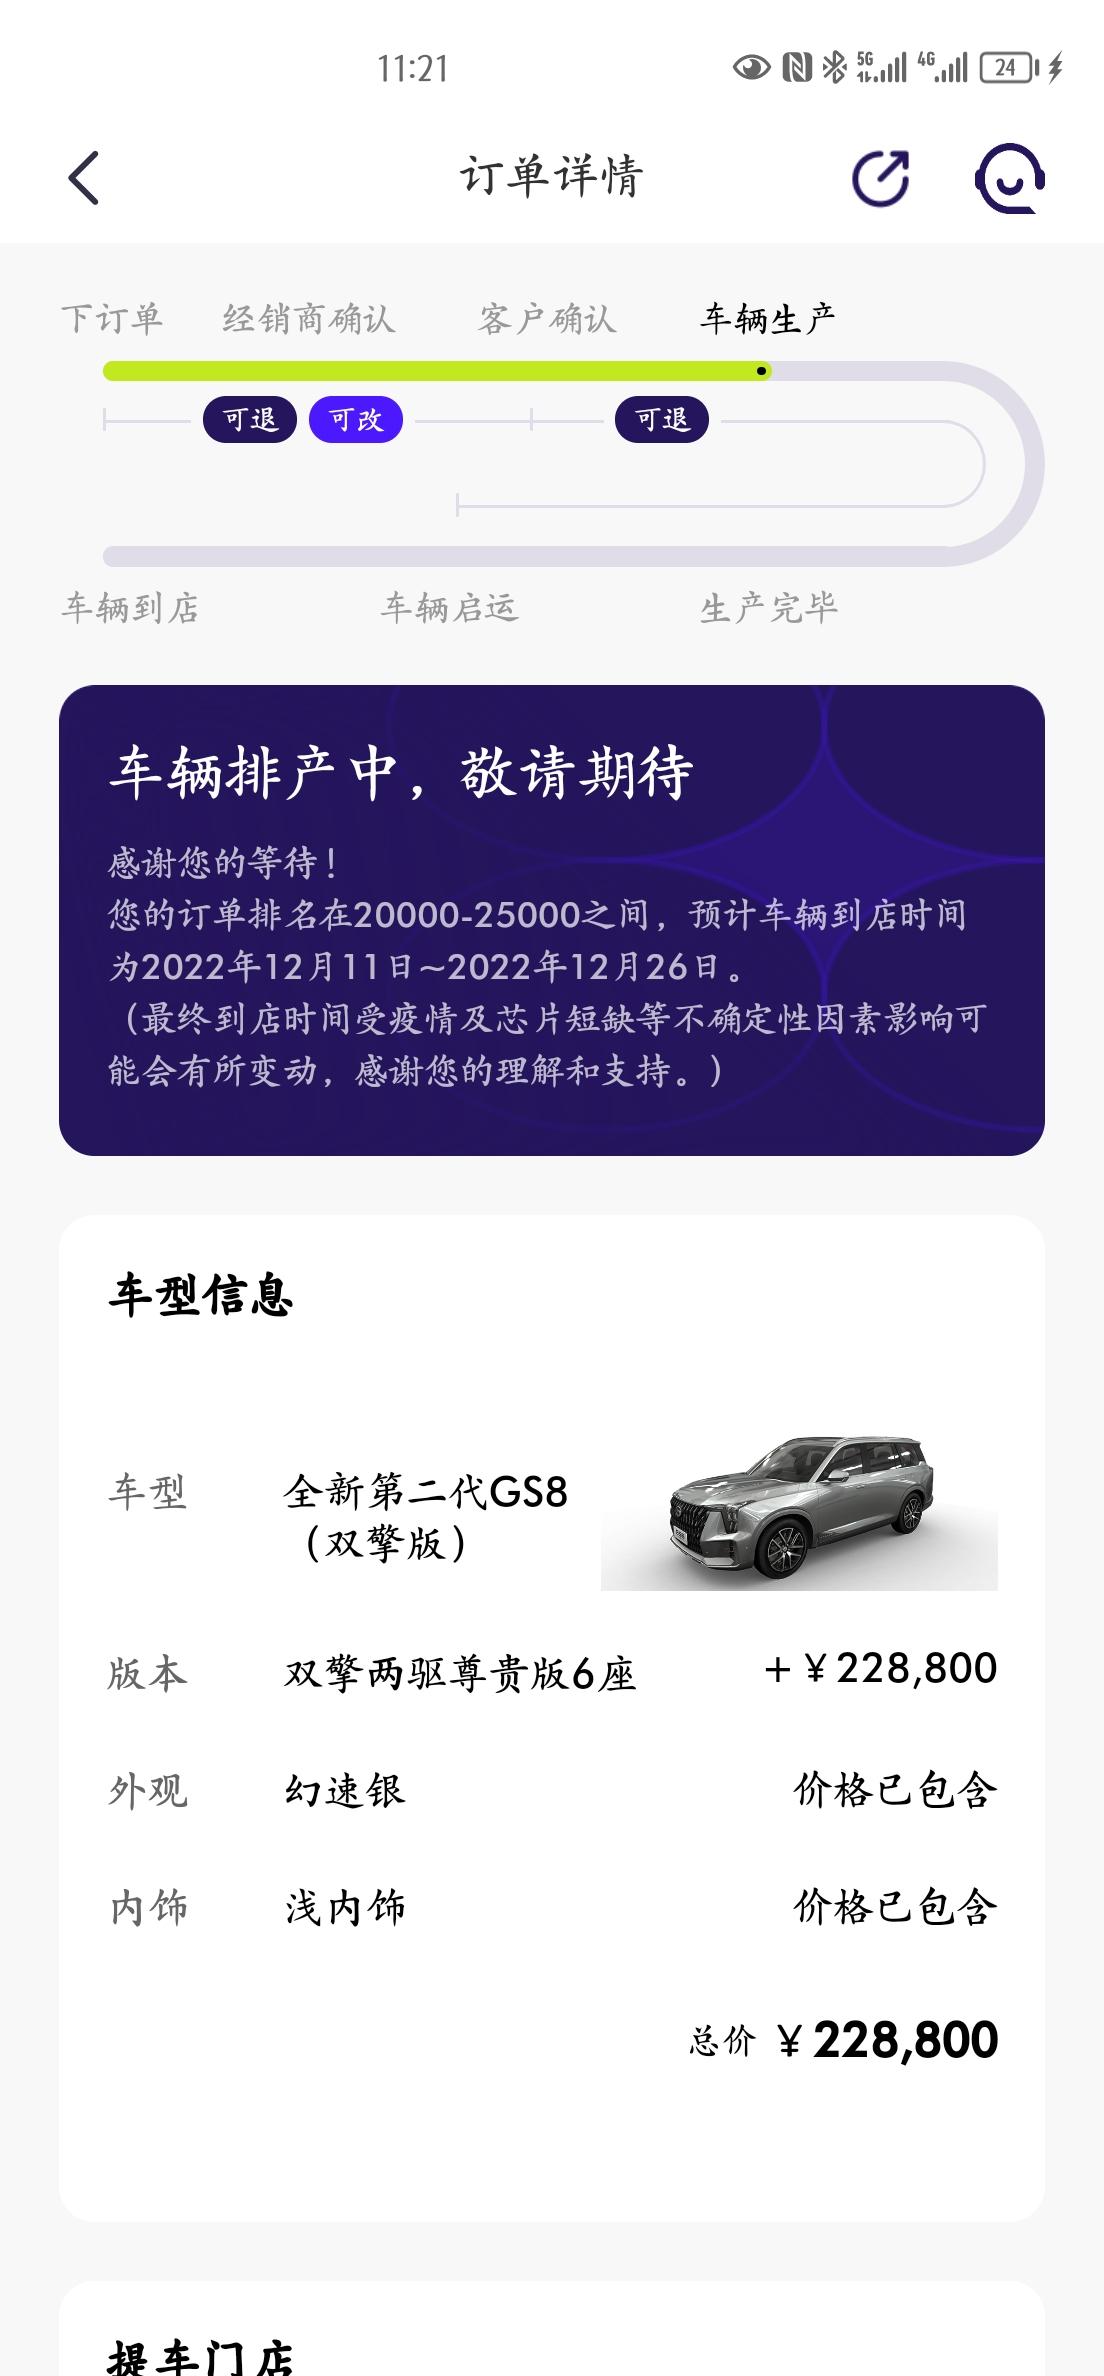 广汽传祺传祺GS8 APP显示订单车辆正在排产中，通常要等多久